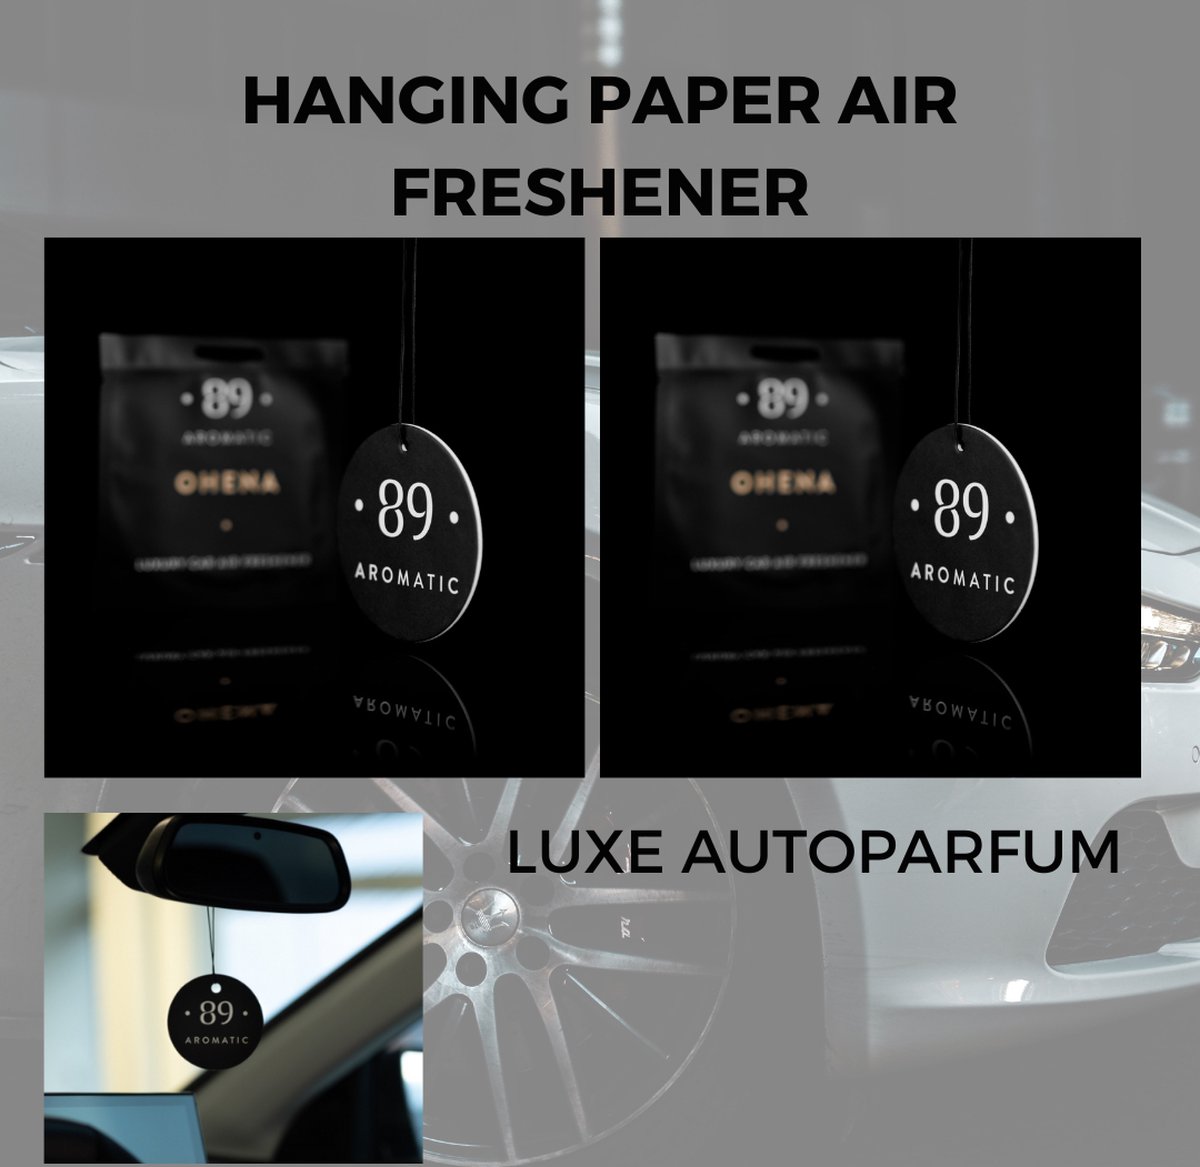 Luxury Car Air Freshener - Aromatic 89 - Auto Luchtverfrisser - Hanging Paper Air Freshener - Autogeur - Car Parfum - Autogeur - Luchtverfrisser - Cadeau voor hem - Cadeau voor haar - Vaderdag - valentijn cadeautje voor hem - By design - 2 STUKS!